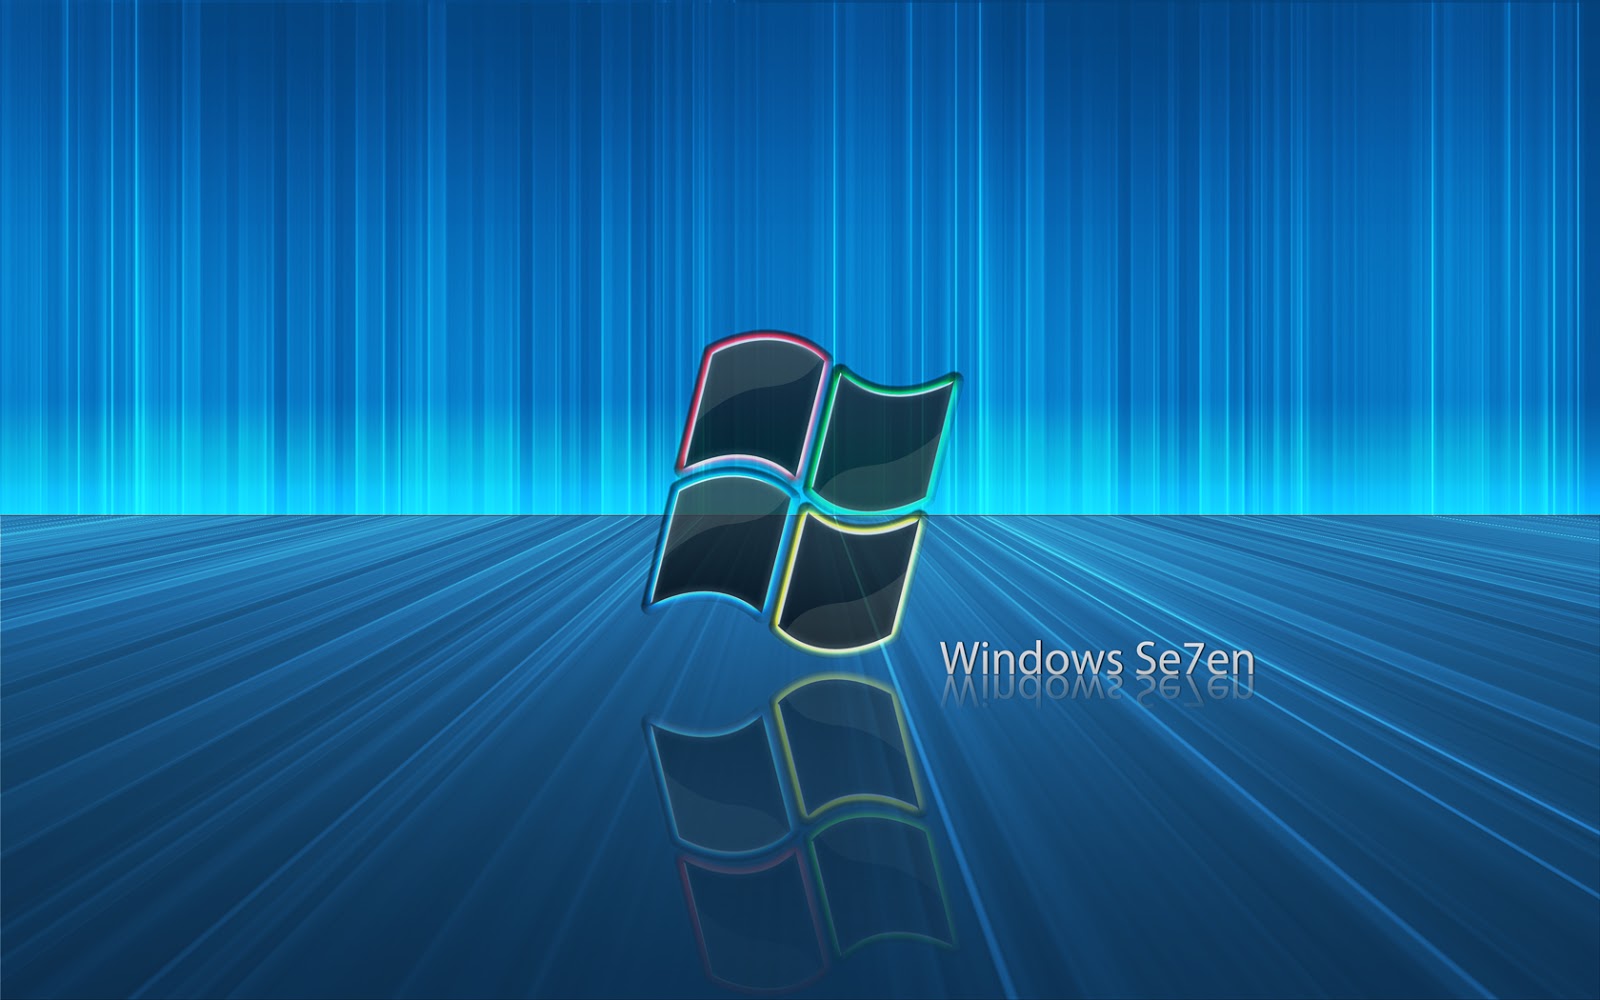 Windows 7 Wallpapers: Windows 7 là một hệ điều hành tuyệt vời và phù hợp với nhiều người sử dụng. Với bộ sưu tập Windows 7 Wallpapers, bạn sẽ được trải nghiệm không gian máy tính đầy sắc màu với hàng trăm hình nền đẹp lung linh. Cùng tận hưởng sự đa dạng và phong phú của Windows 7!